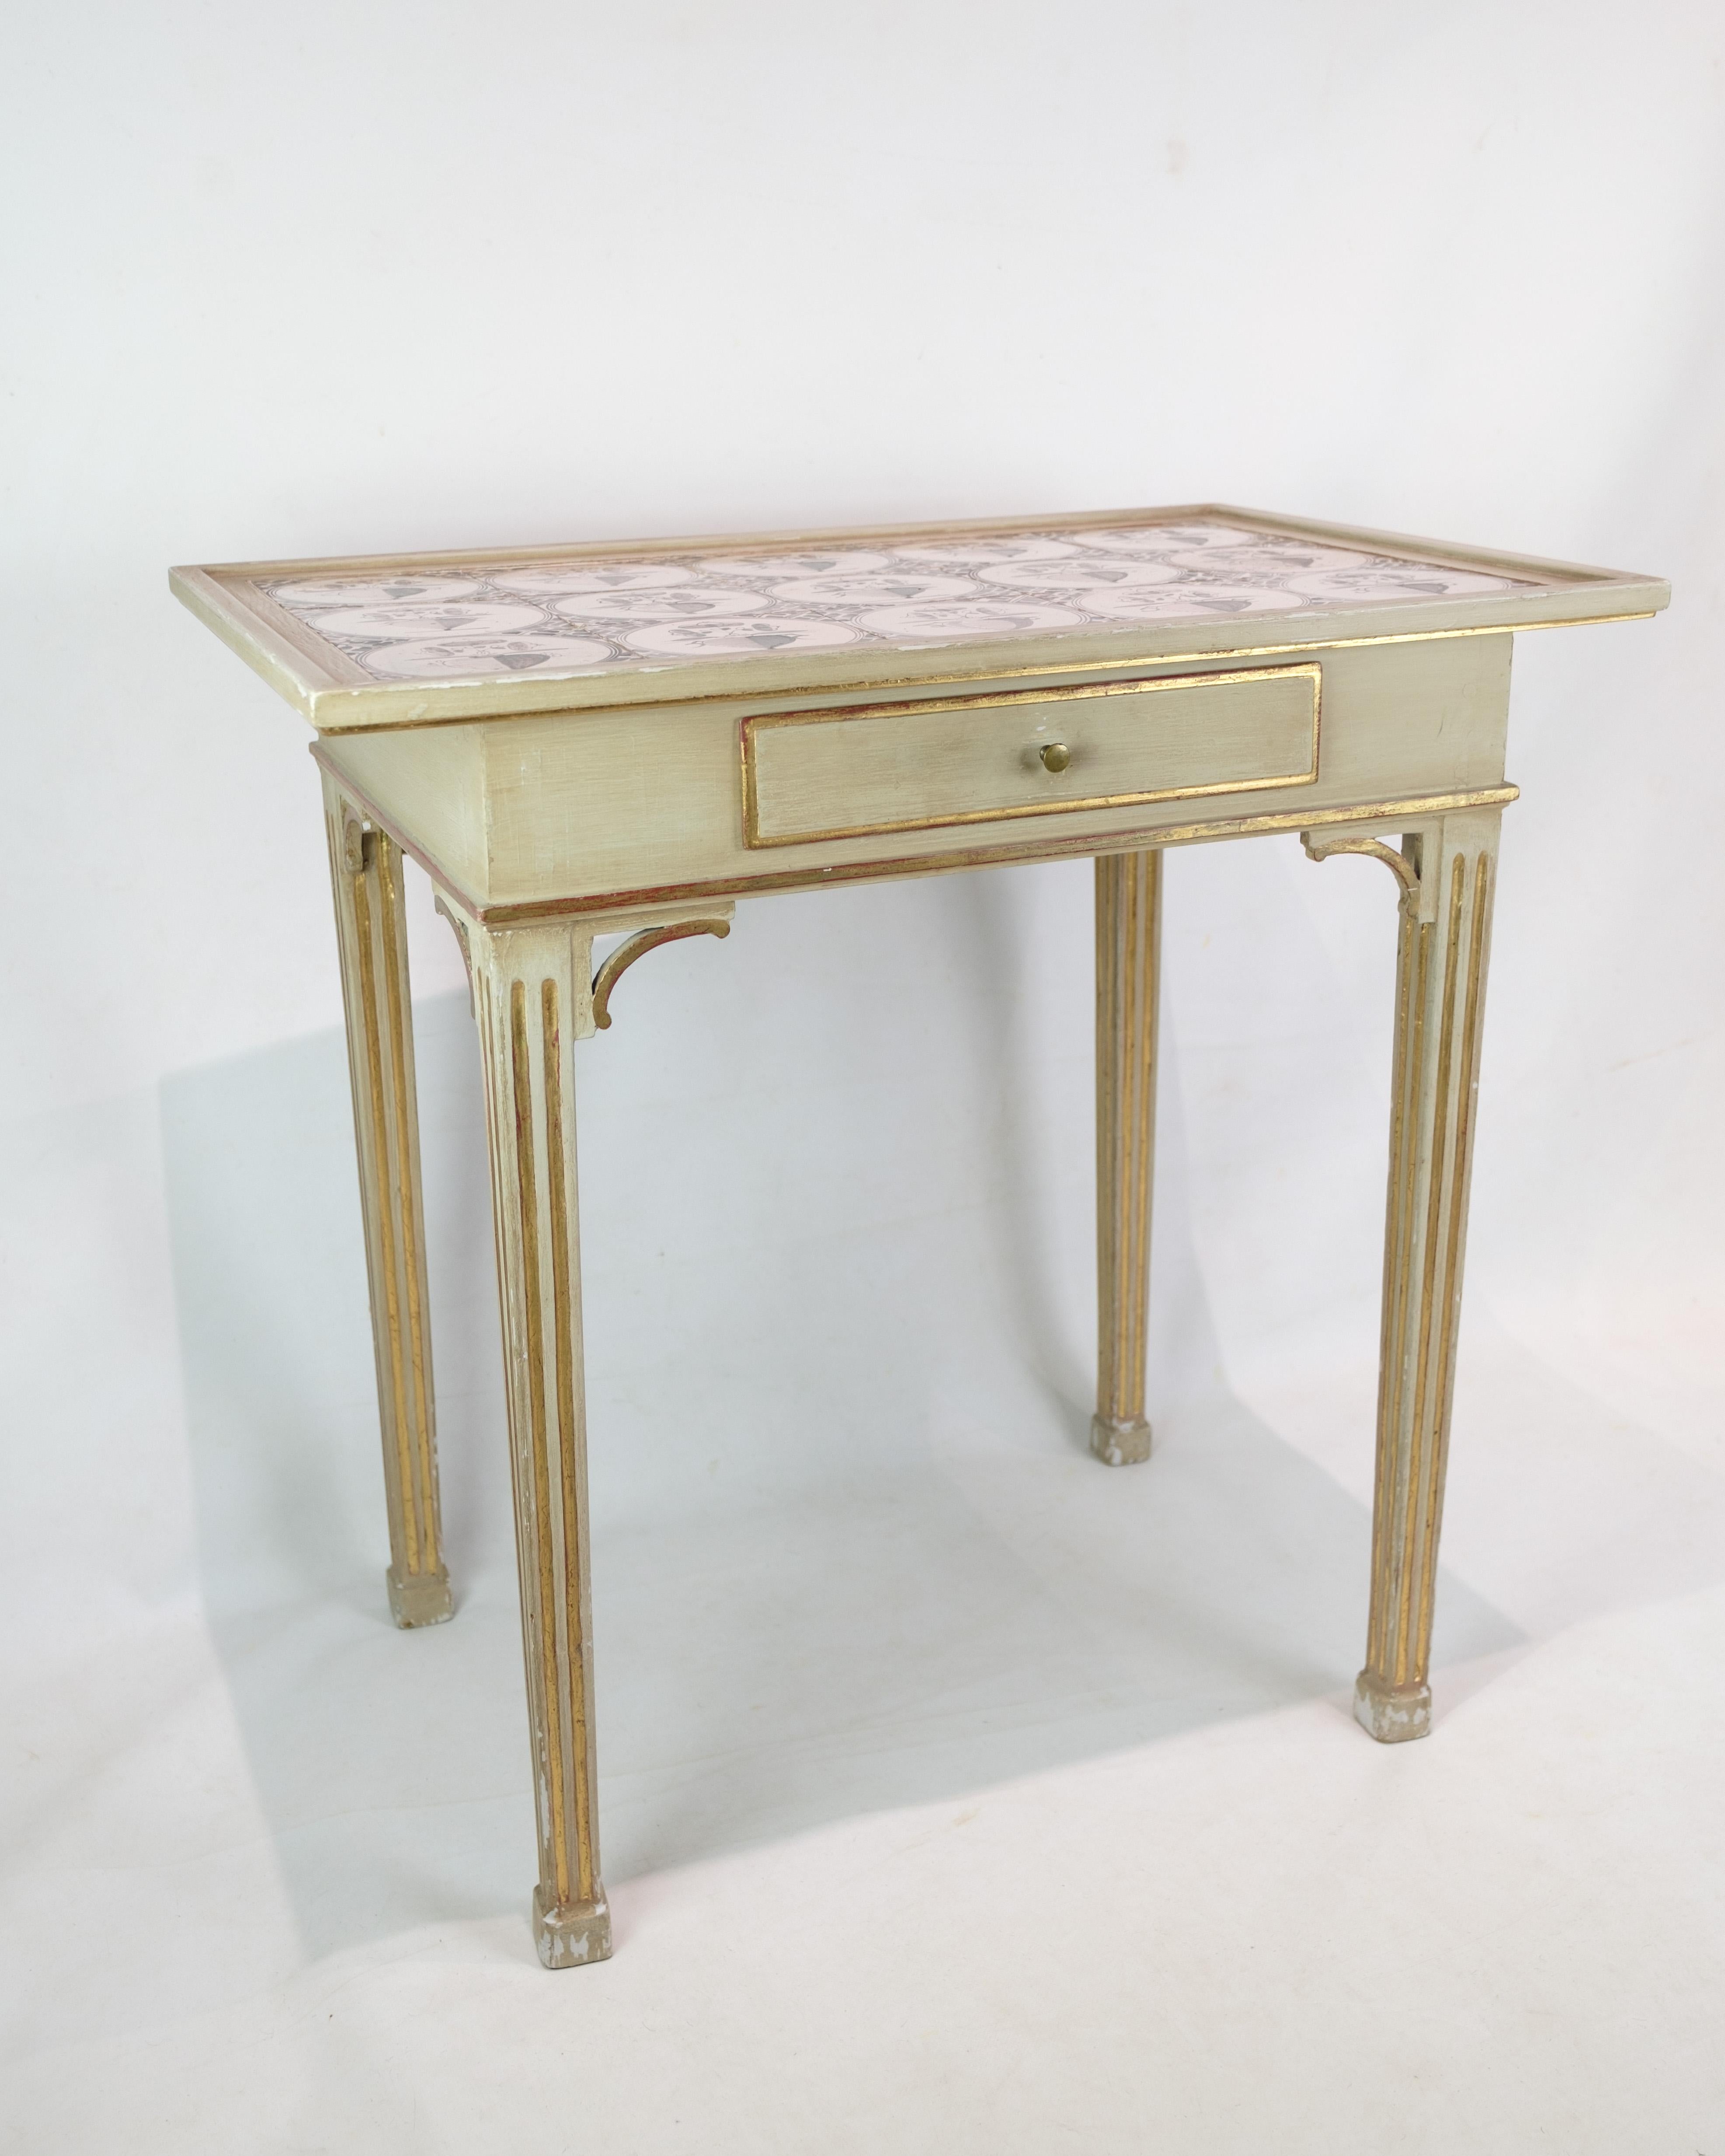 Cette table en carreaux peints représente un héritage distingué d'élégance artisanale et de sophistication historique. Dans un style gustavien et Louis XVI caractéristique, cette table est une œuvre d'art intemporelle du XIXe siècle.

La table est